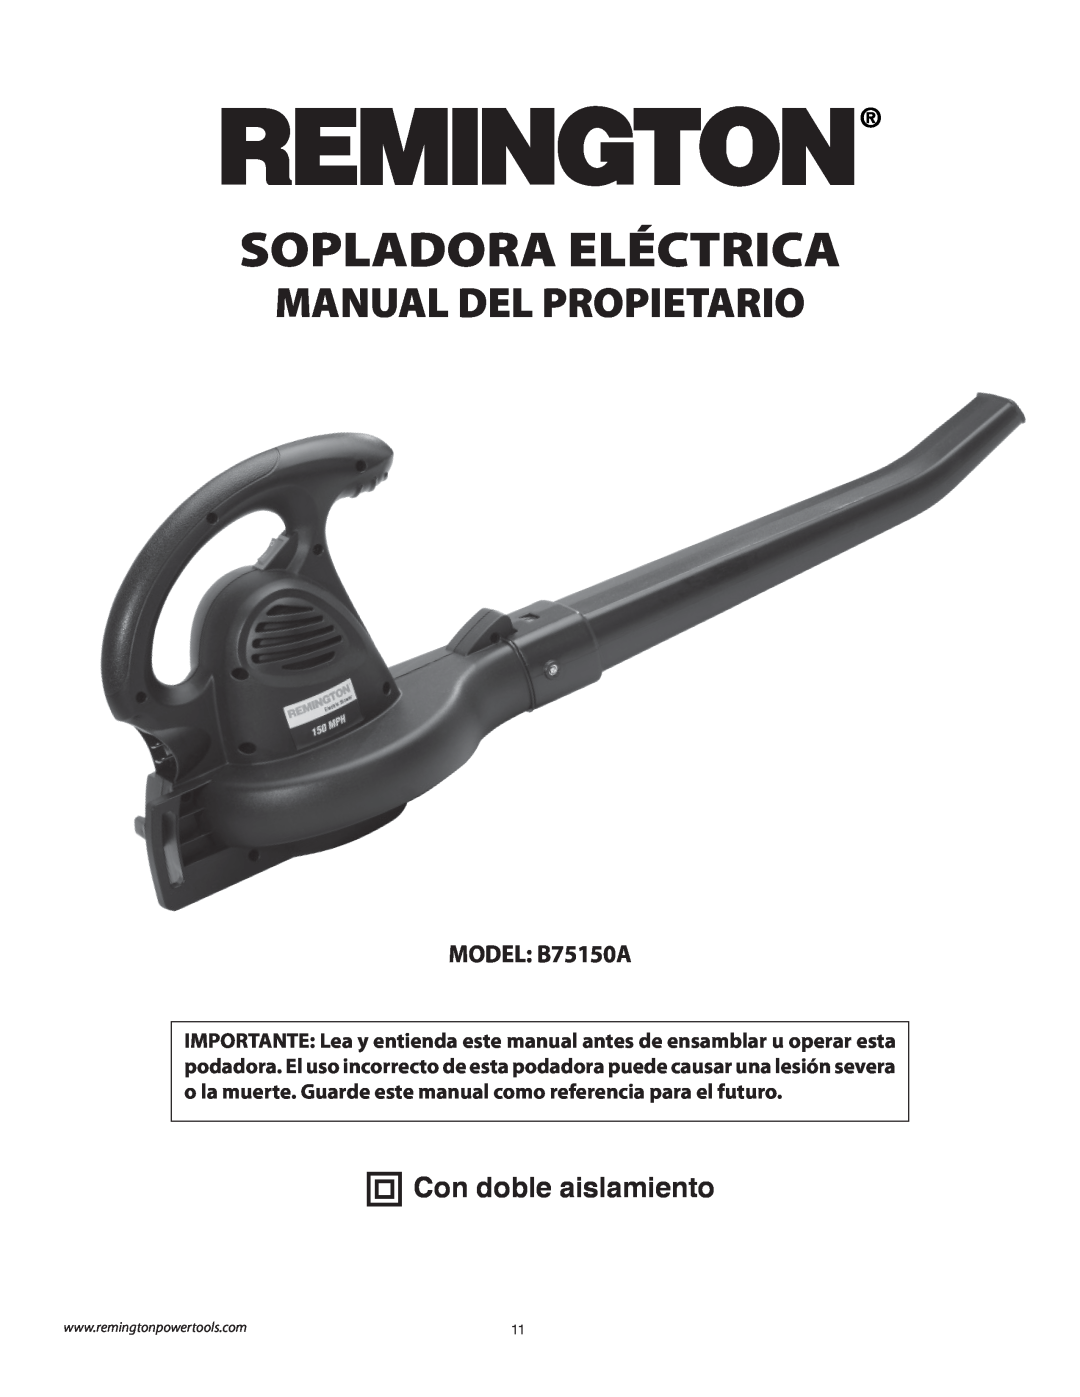 Remington owner manual Sopladora Eléctrica, Manual Del Propietario, Con doble aislamiento, MODEL B75150A 